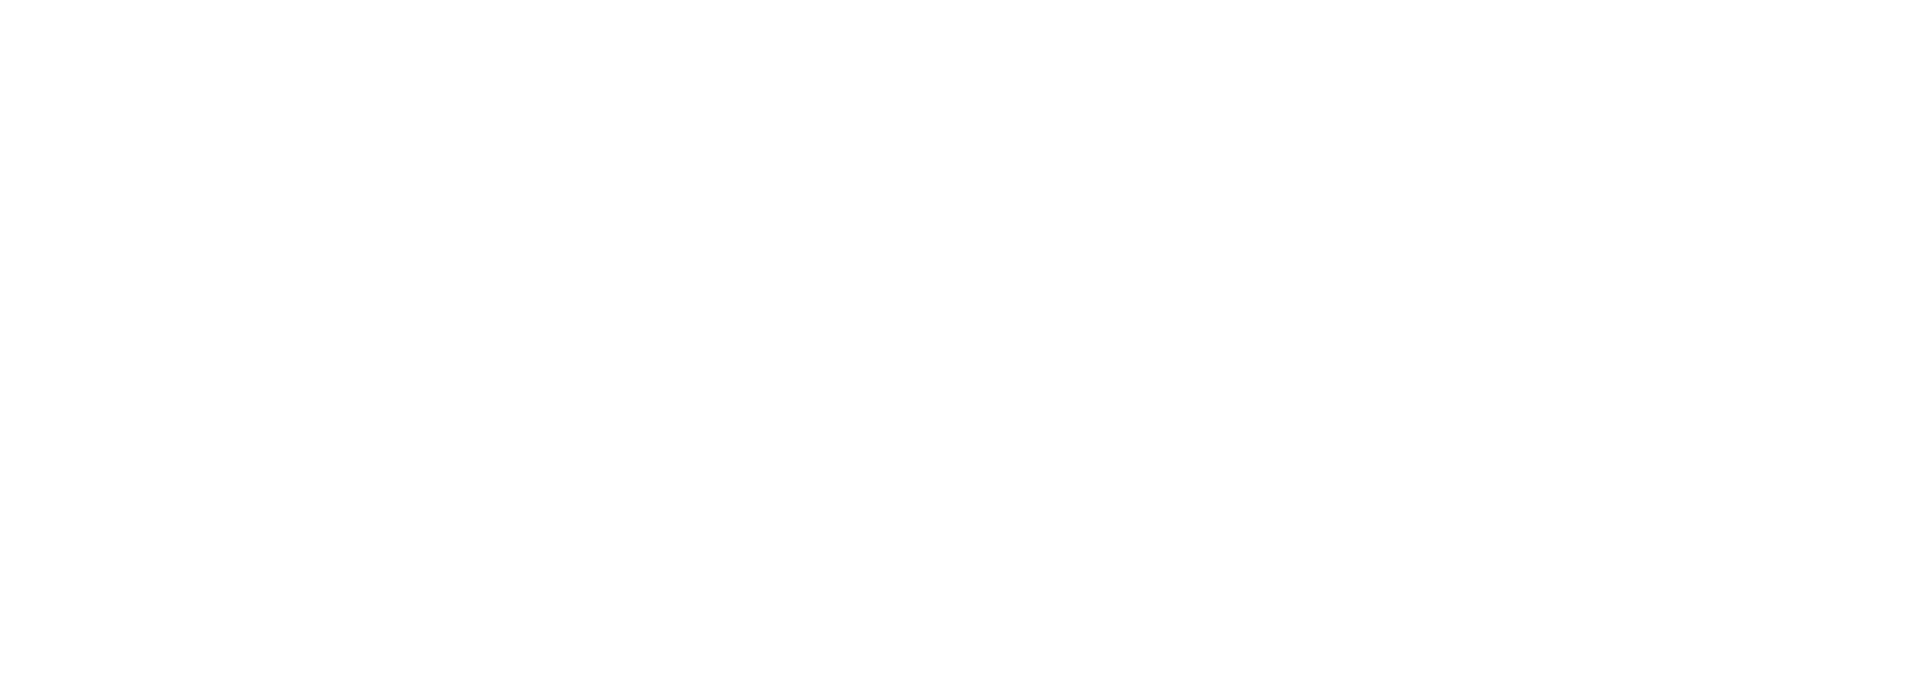 Amazon Logo - White